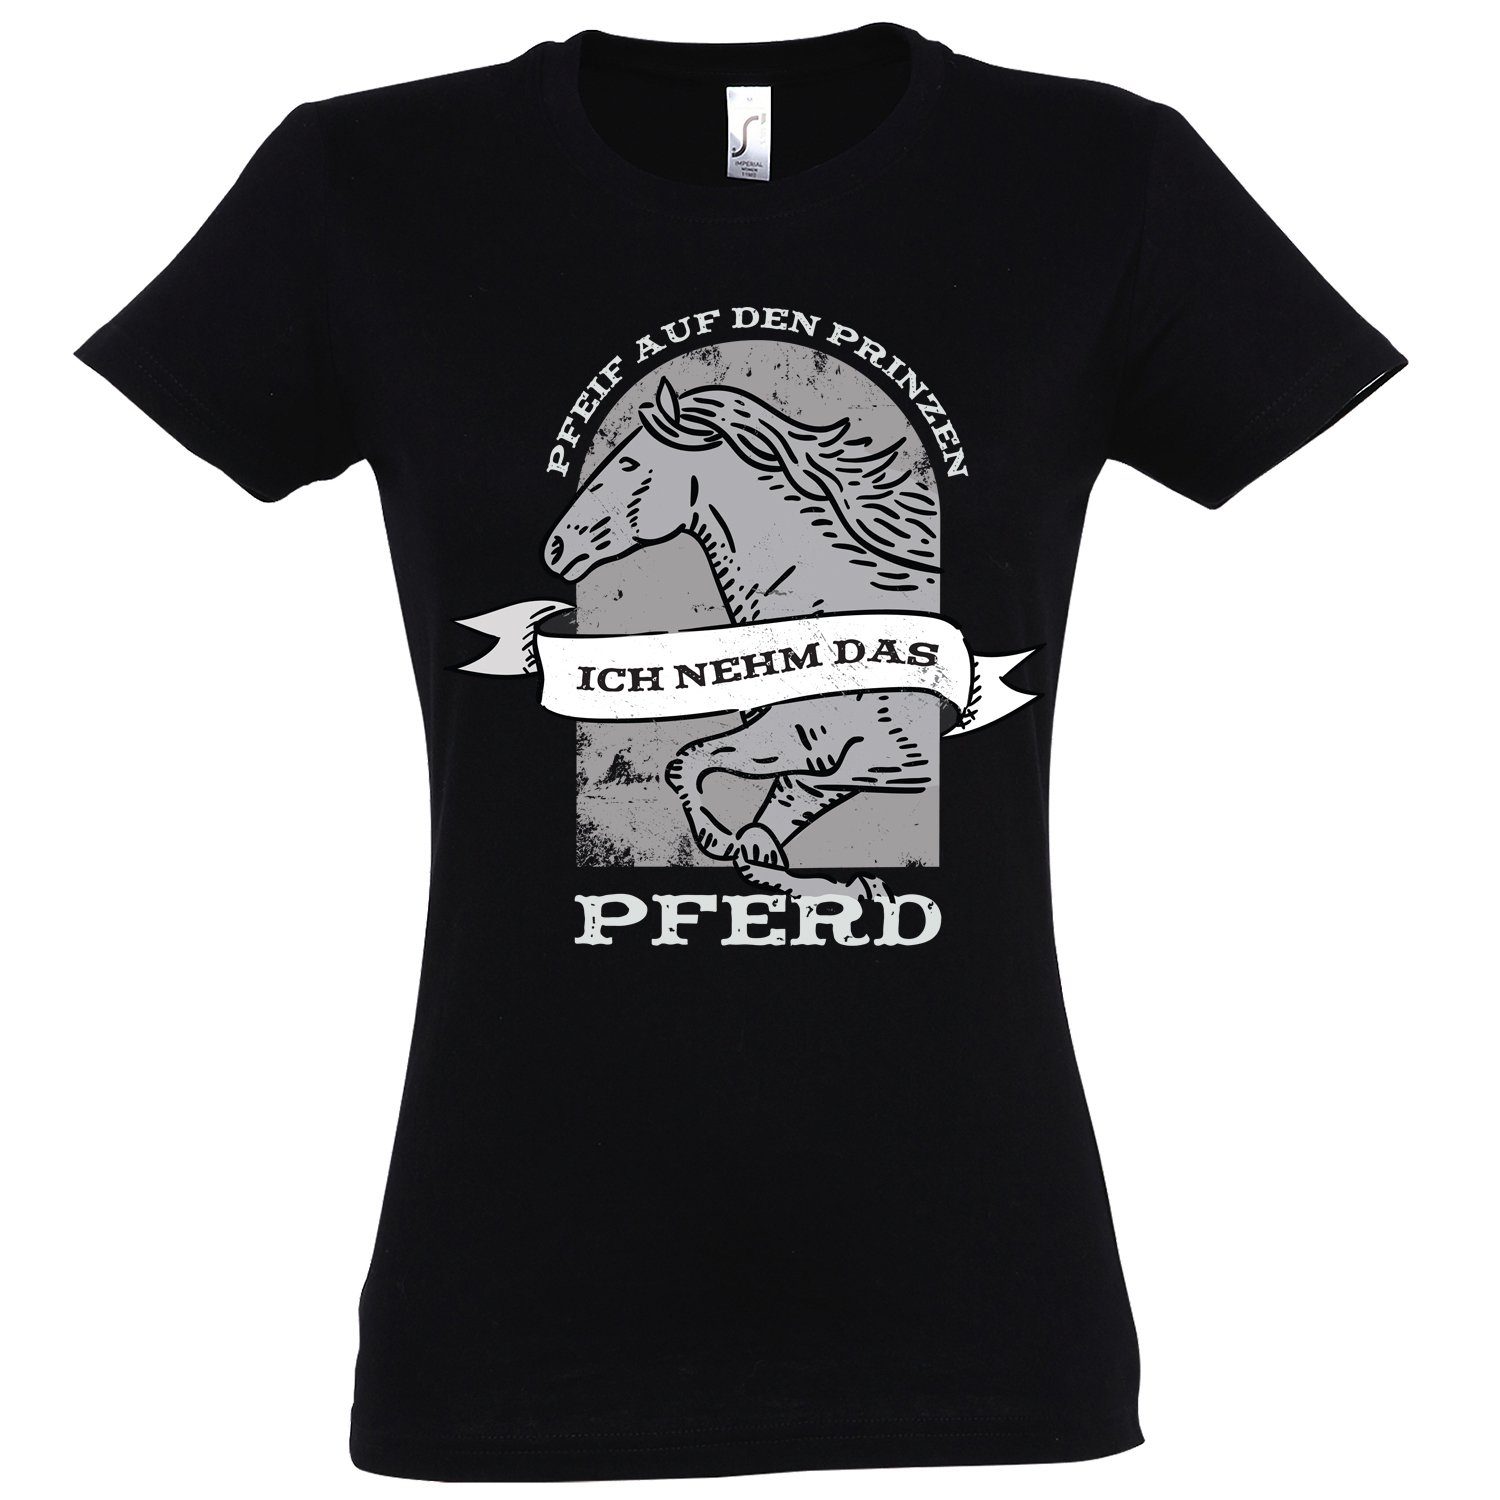 Youth Designz T-Shirt "Pfeif auf den Prinzen, ich nehm das Pferd" Damen T-Shirt mit modischem print Schwarz